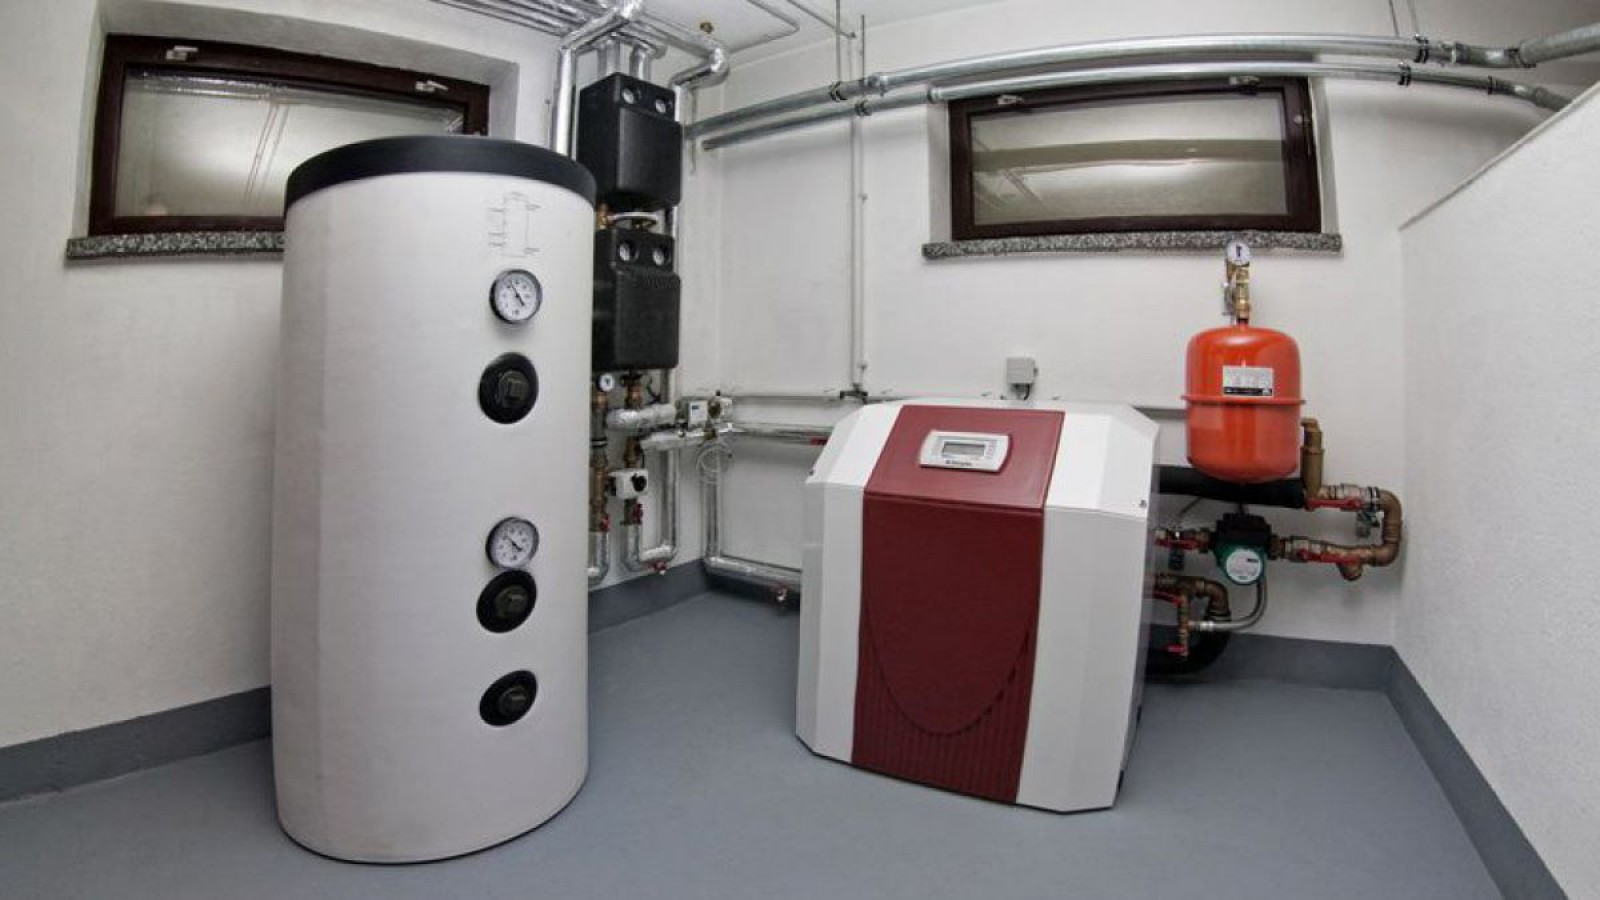 Wärmepumpe im Keller mit 300 Liter Warmwasserspeicher, Pumpengruppe und Sicherheitseinrichtungen.